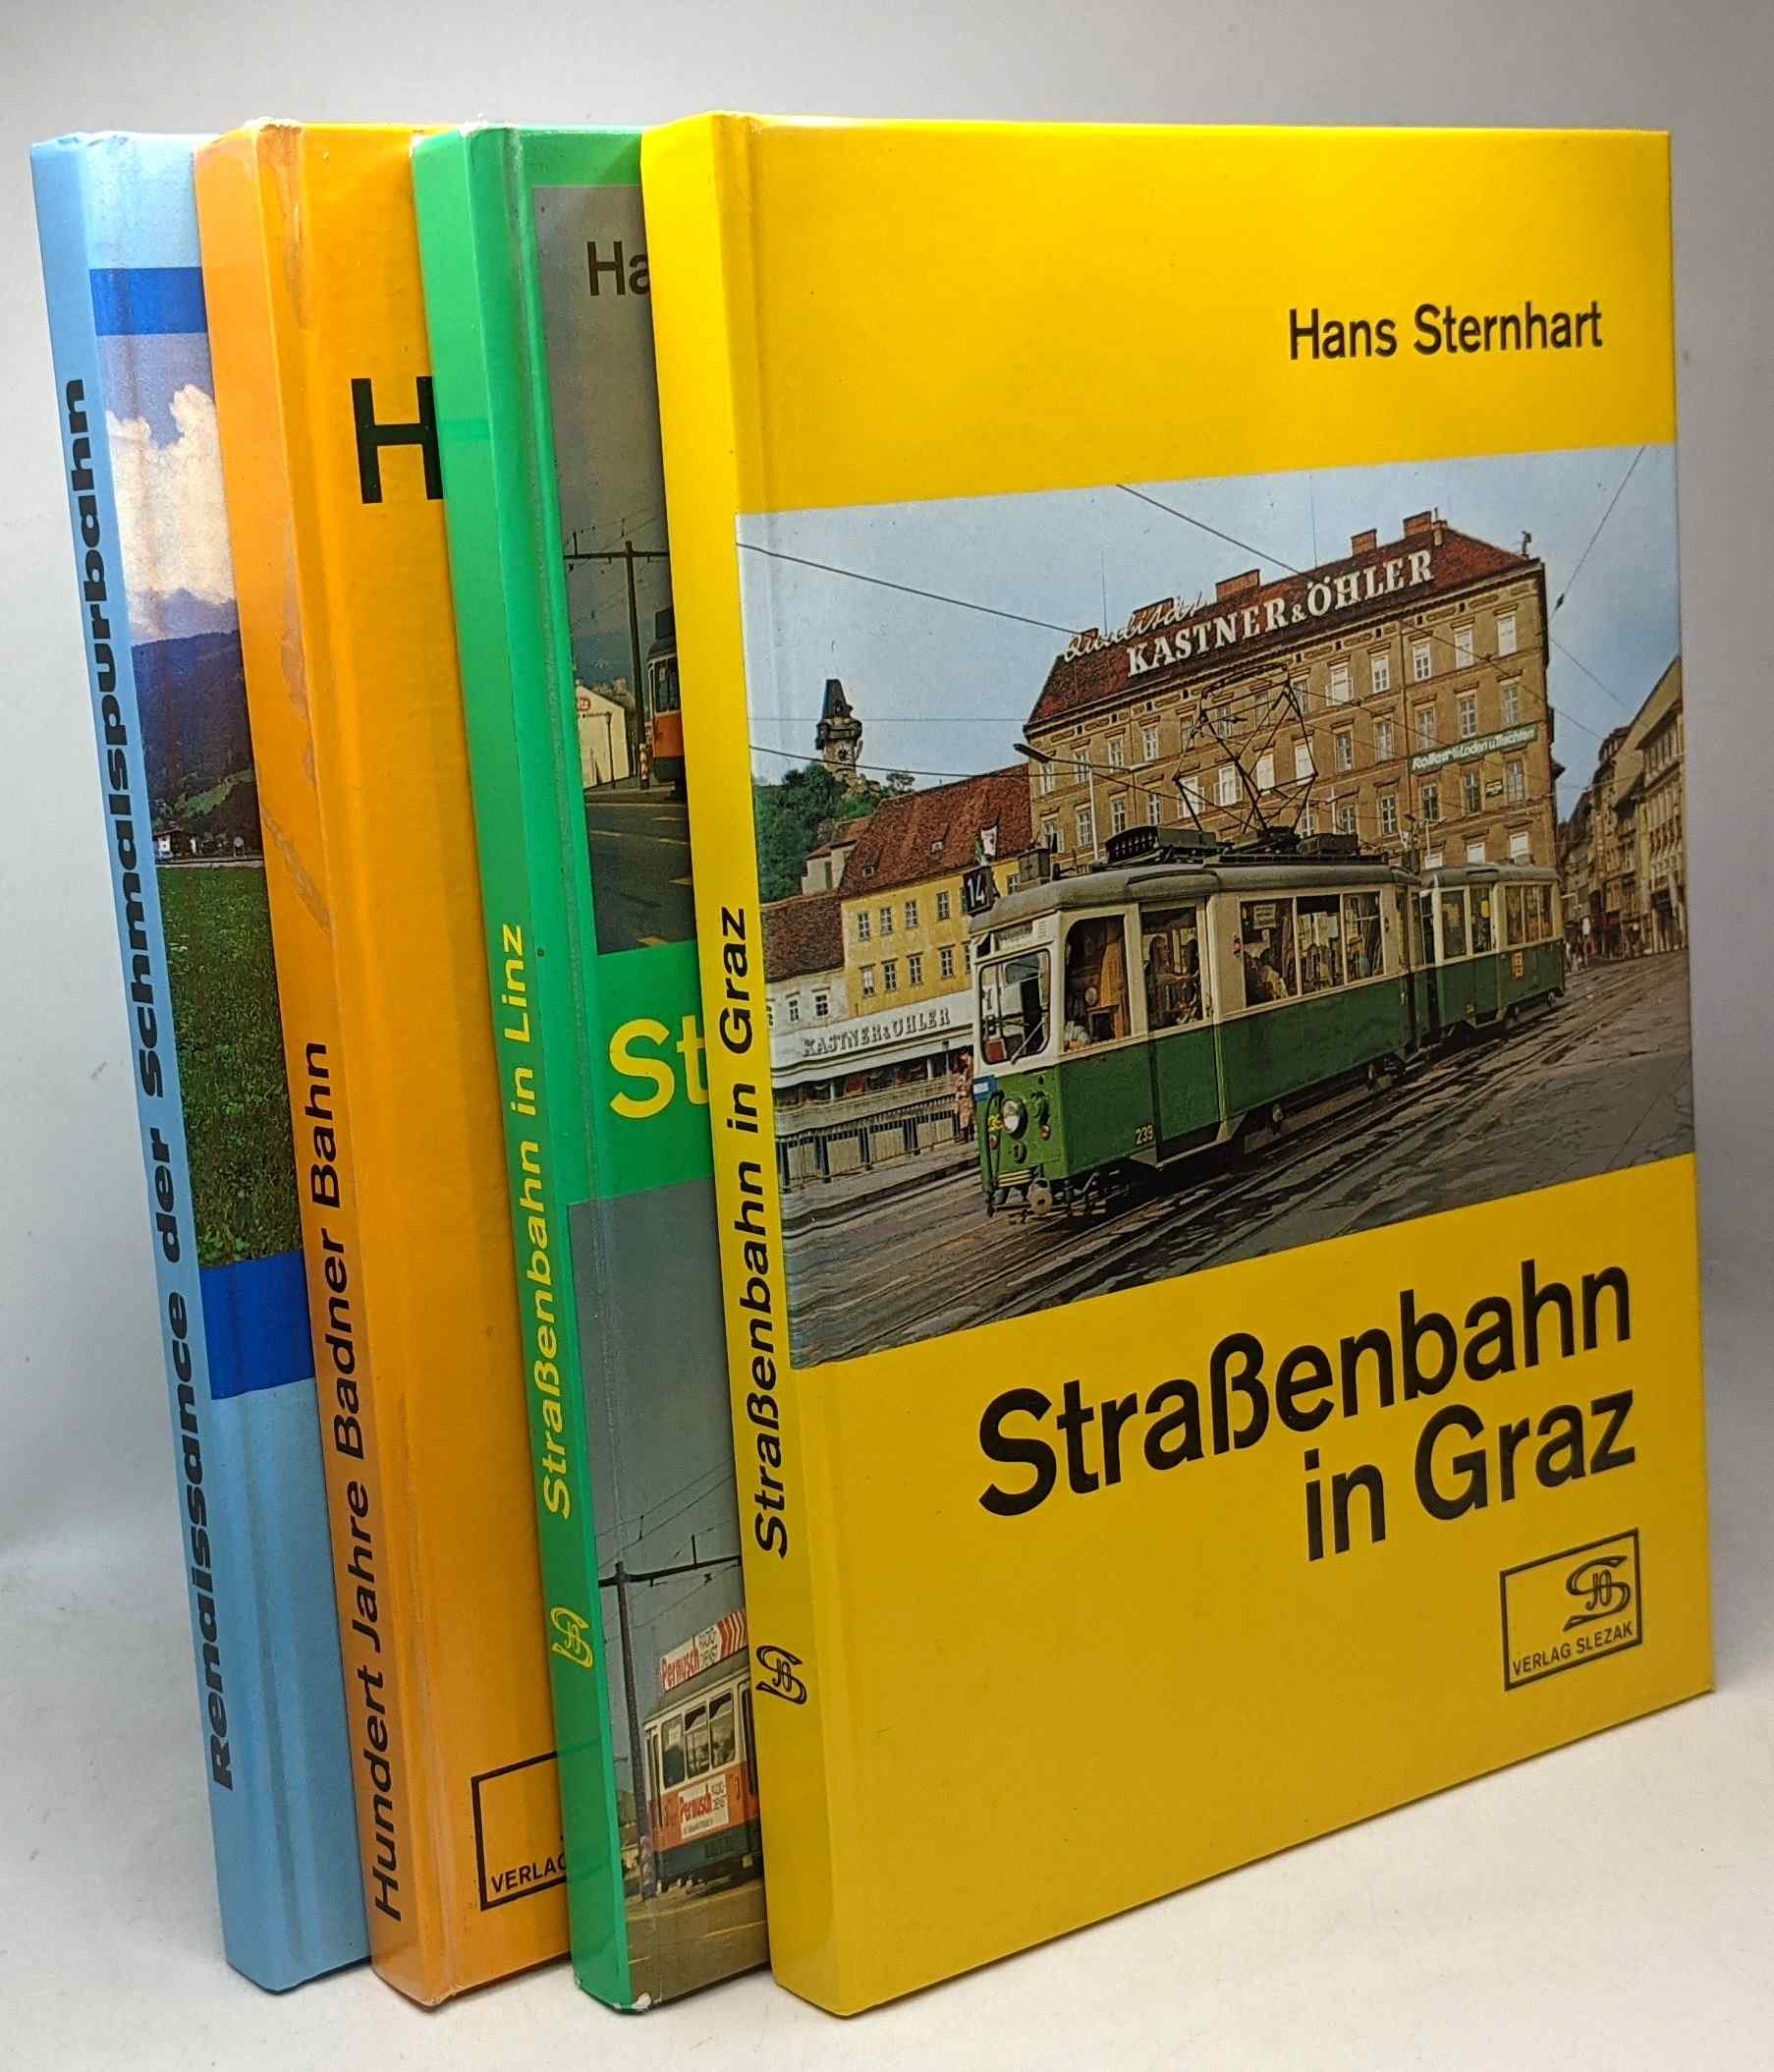 Strassenbahn in Graz + Strassenbahn in Linz + renaissance der schmalspurbahn in österreich + Hunder Jahre Badner Bahn --- 4 livres - Sternhart Hans